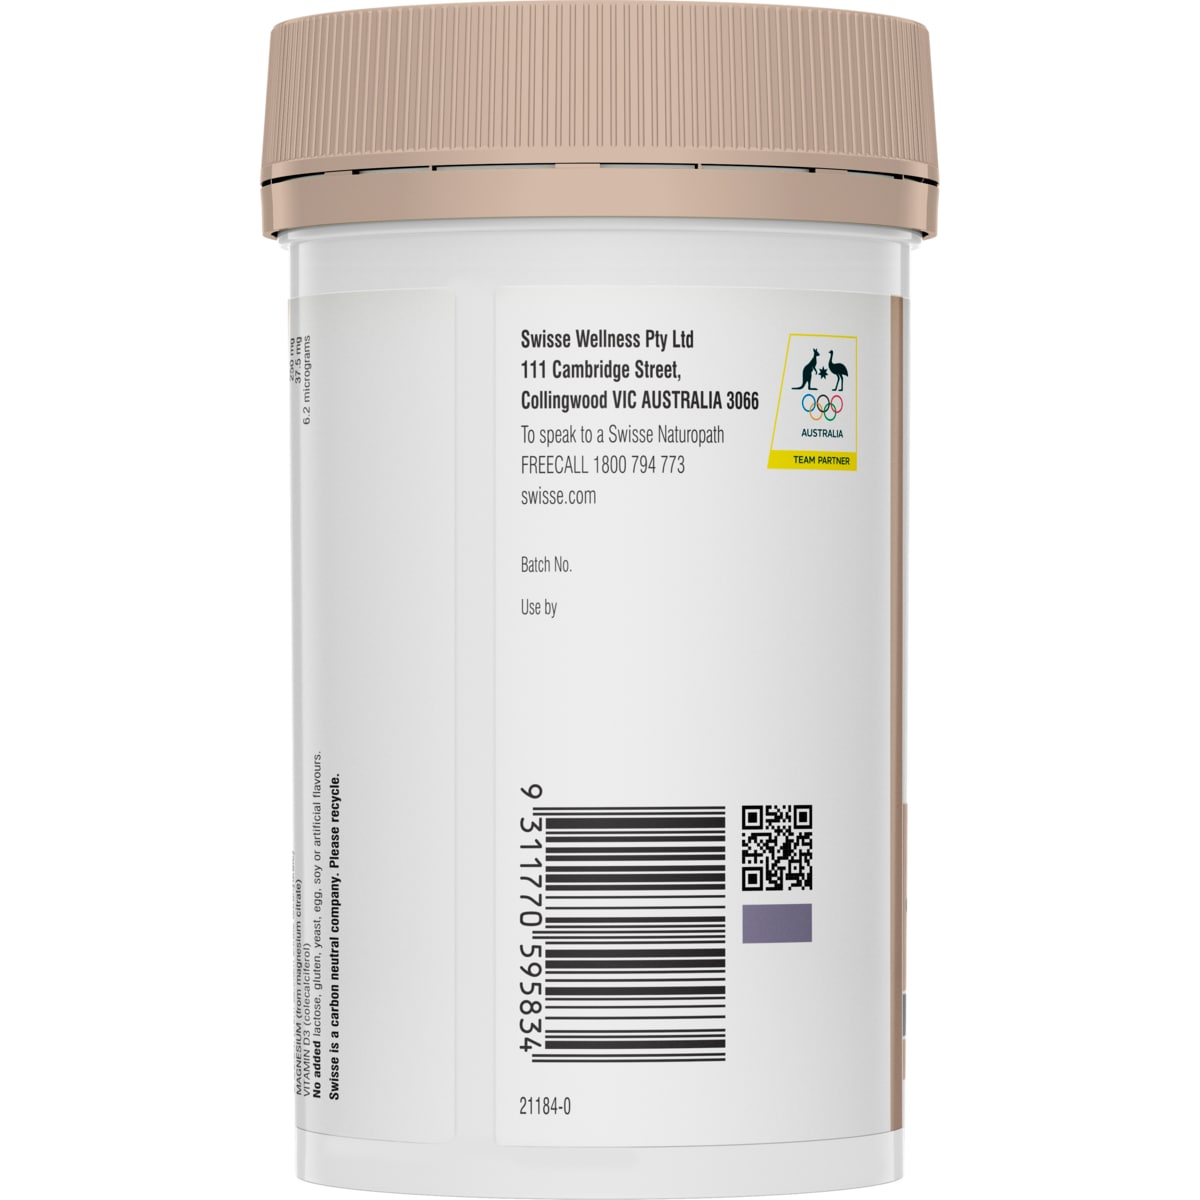 Swisse Ultiboost Magnesium Calcium + Vitamin D3 120 Tablets